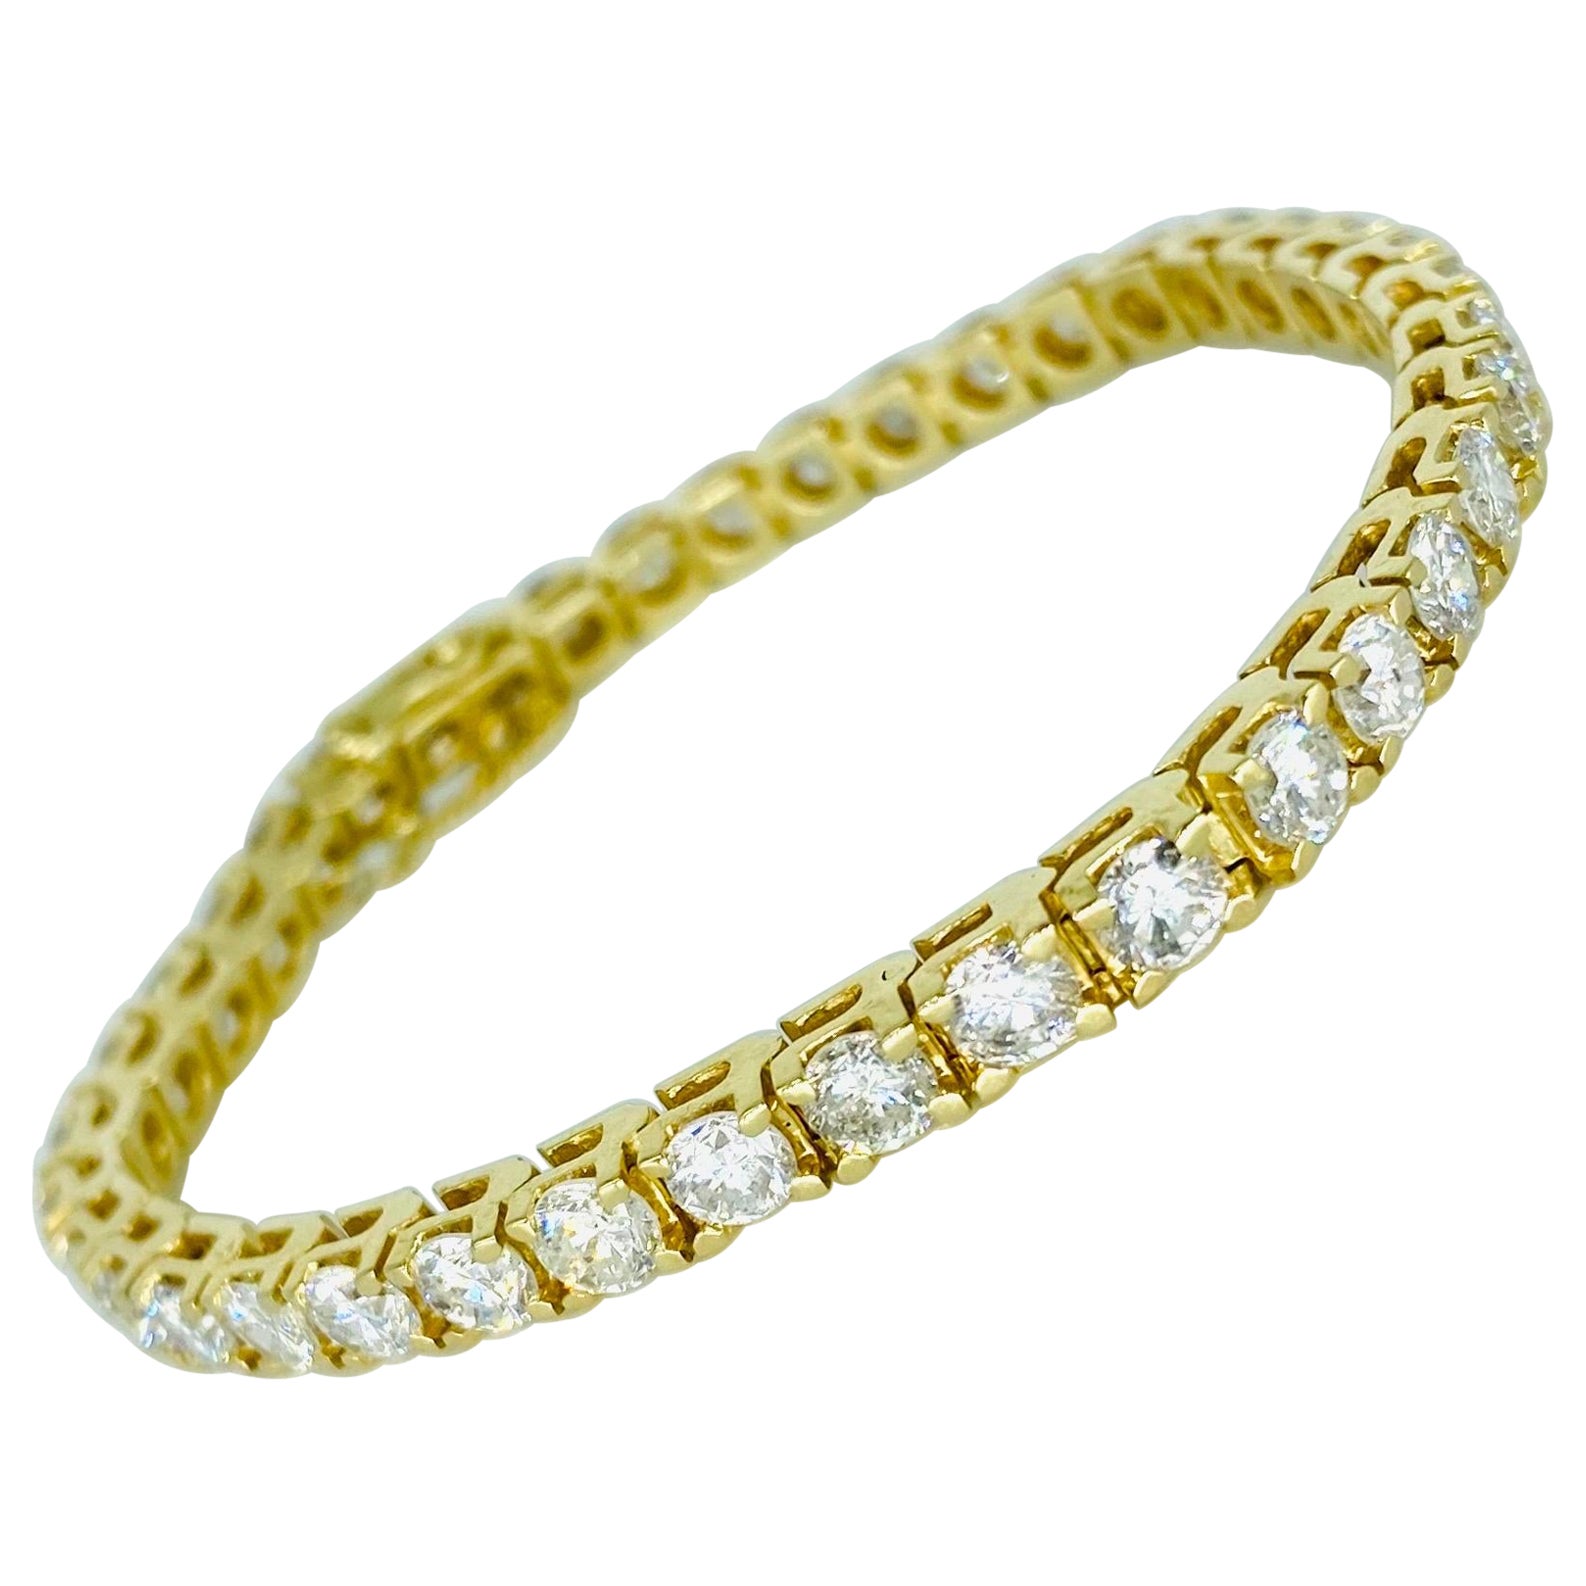 Bracelet tennis vintage en or 14 carats avec diamants ronds d'un poids total de 11 carats